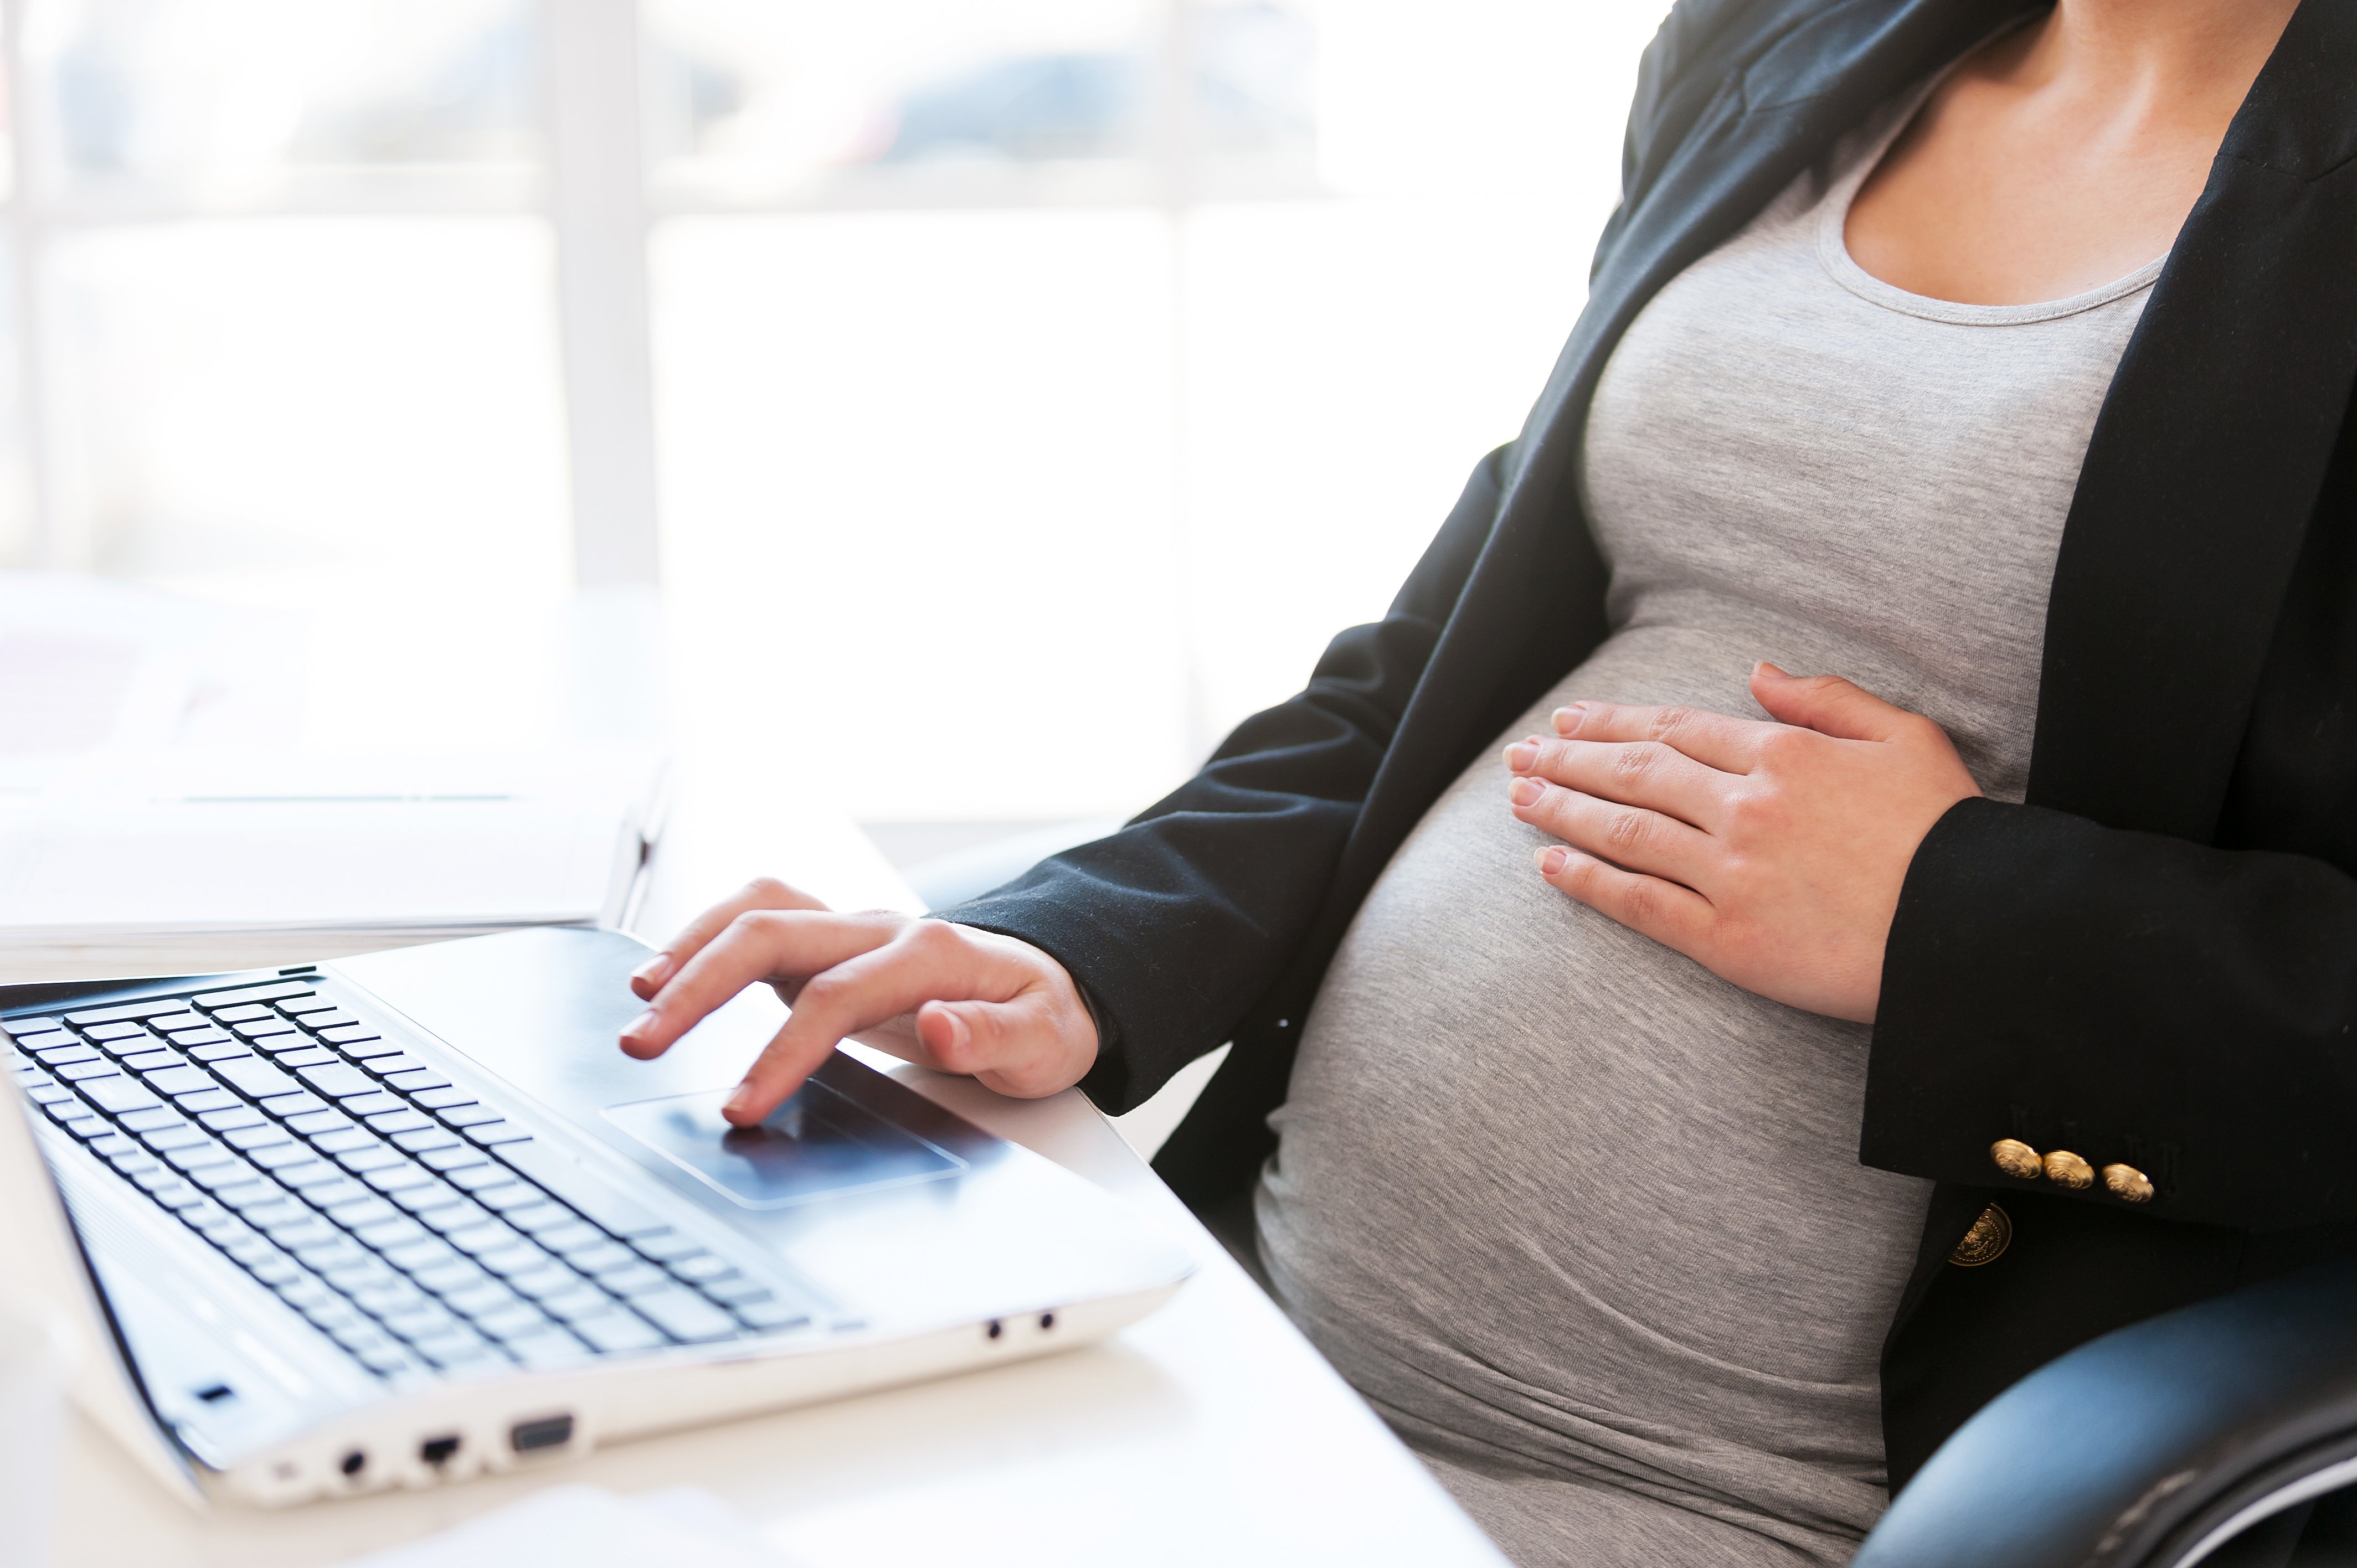 Schwangere Frau, die am Laptop arbeitet | Quelle: Shutterstock